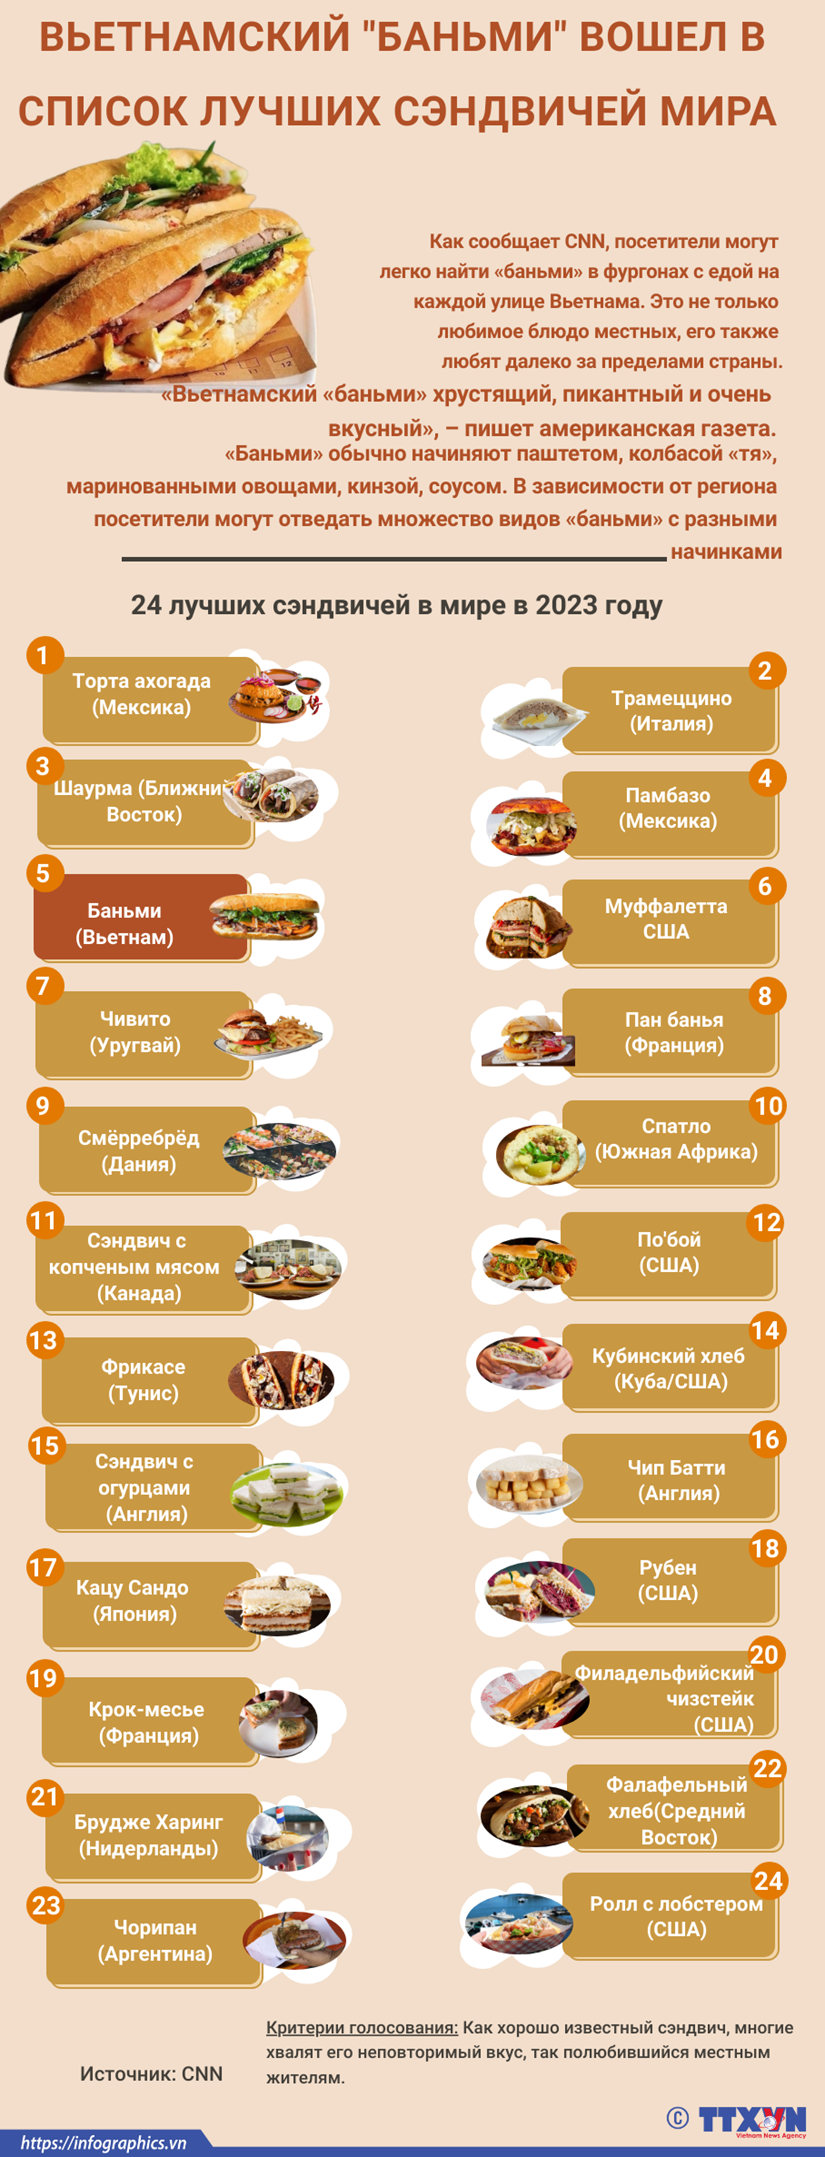 Вьетнамскии «баньми» вошел в список лучших сэндвичеи мира hinh anh 1